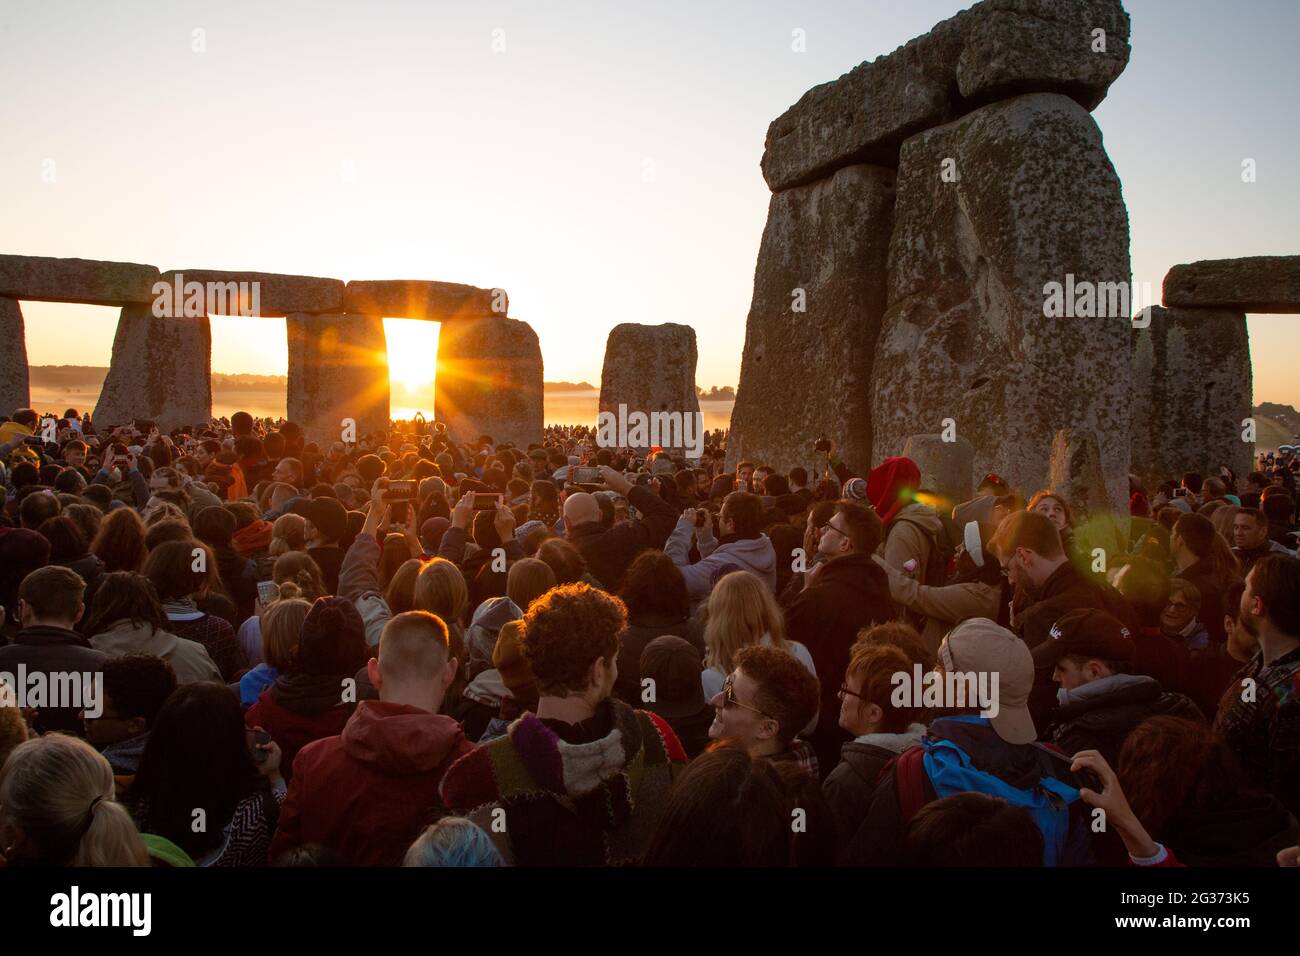 Les premiers rayons du soleil entrent dans le cercle intérieur du monument néolithique Stonehenge sur la plaine de Salisbury le jour du solstice. Angleterre, Royaume-Uni. Banque D'Images